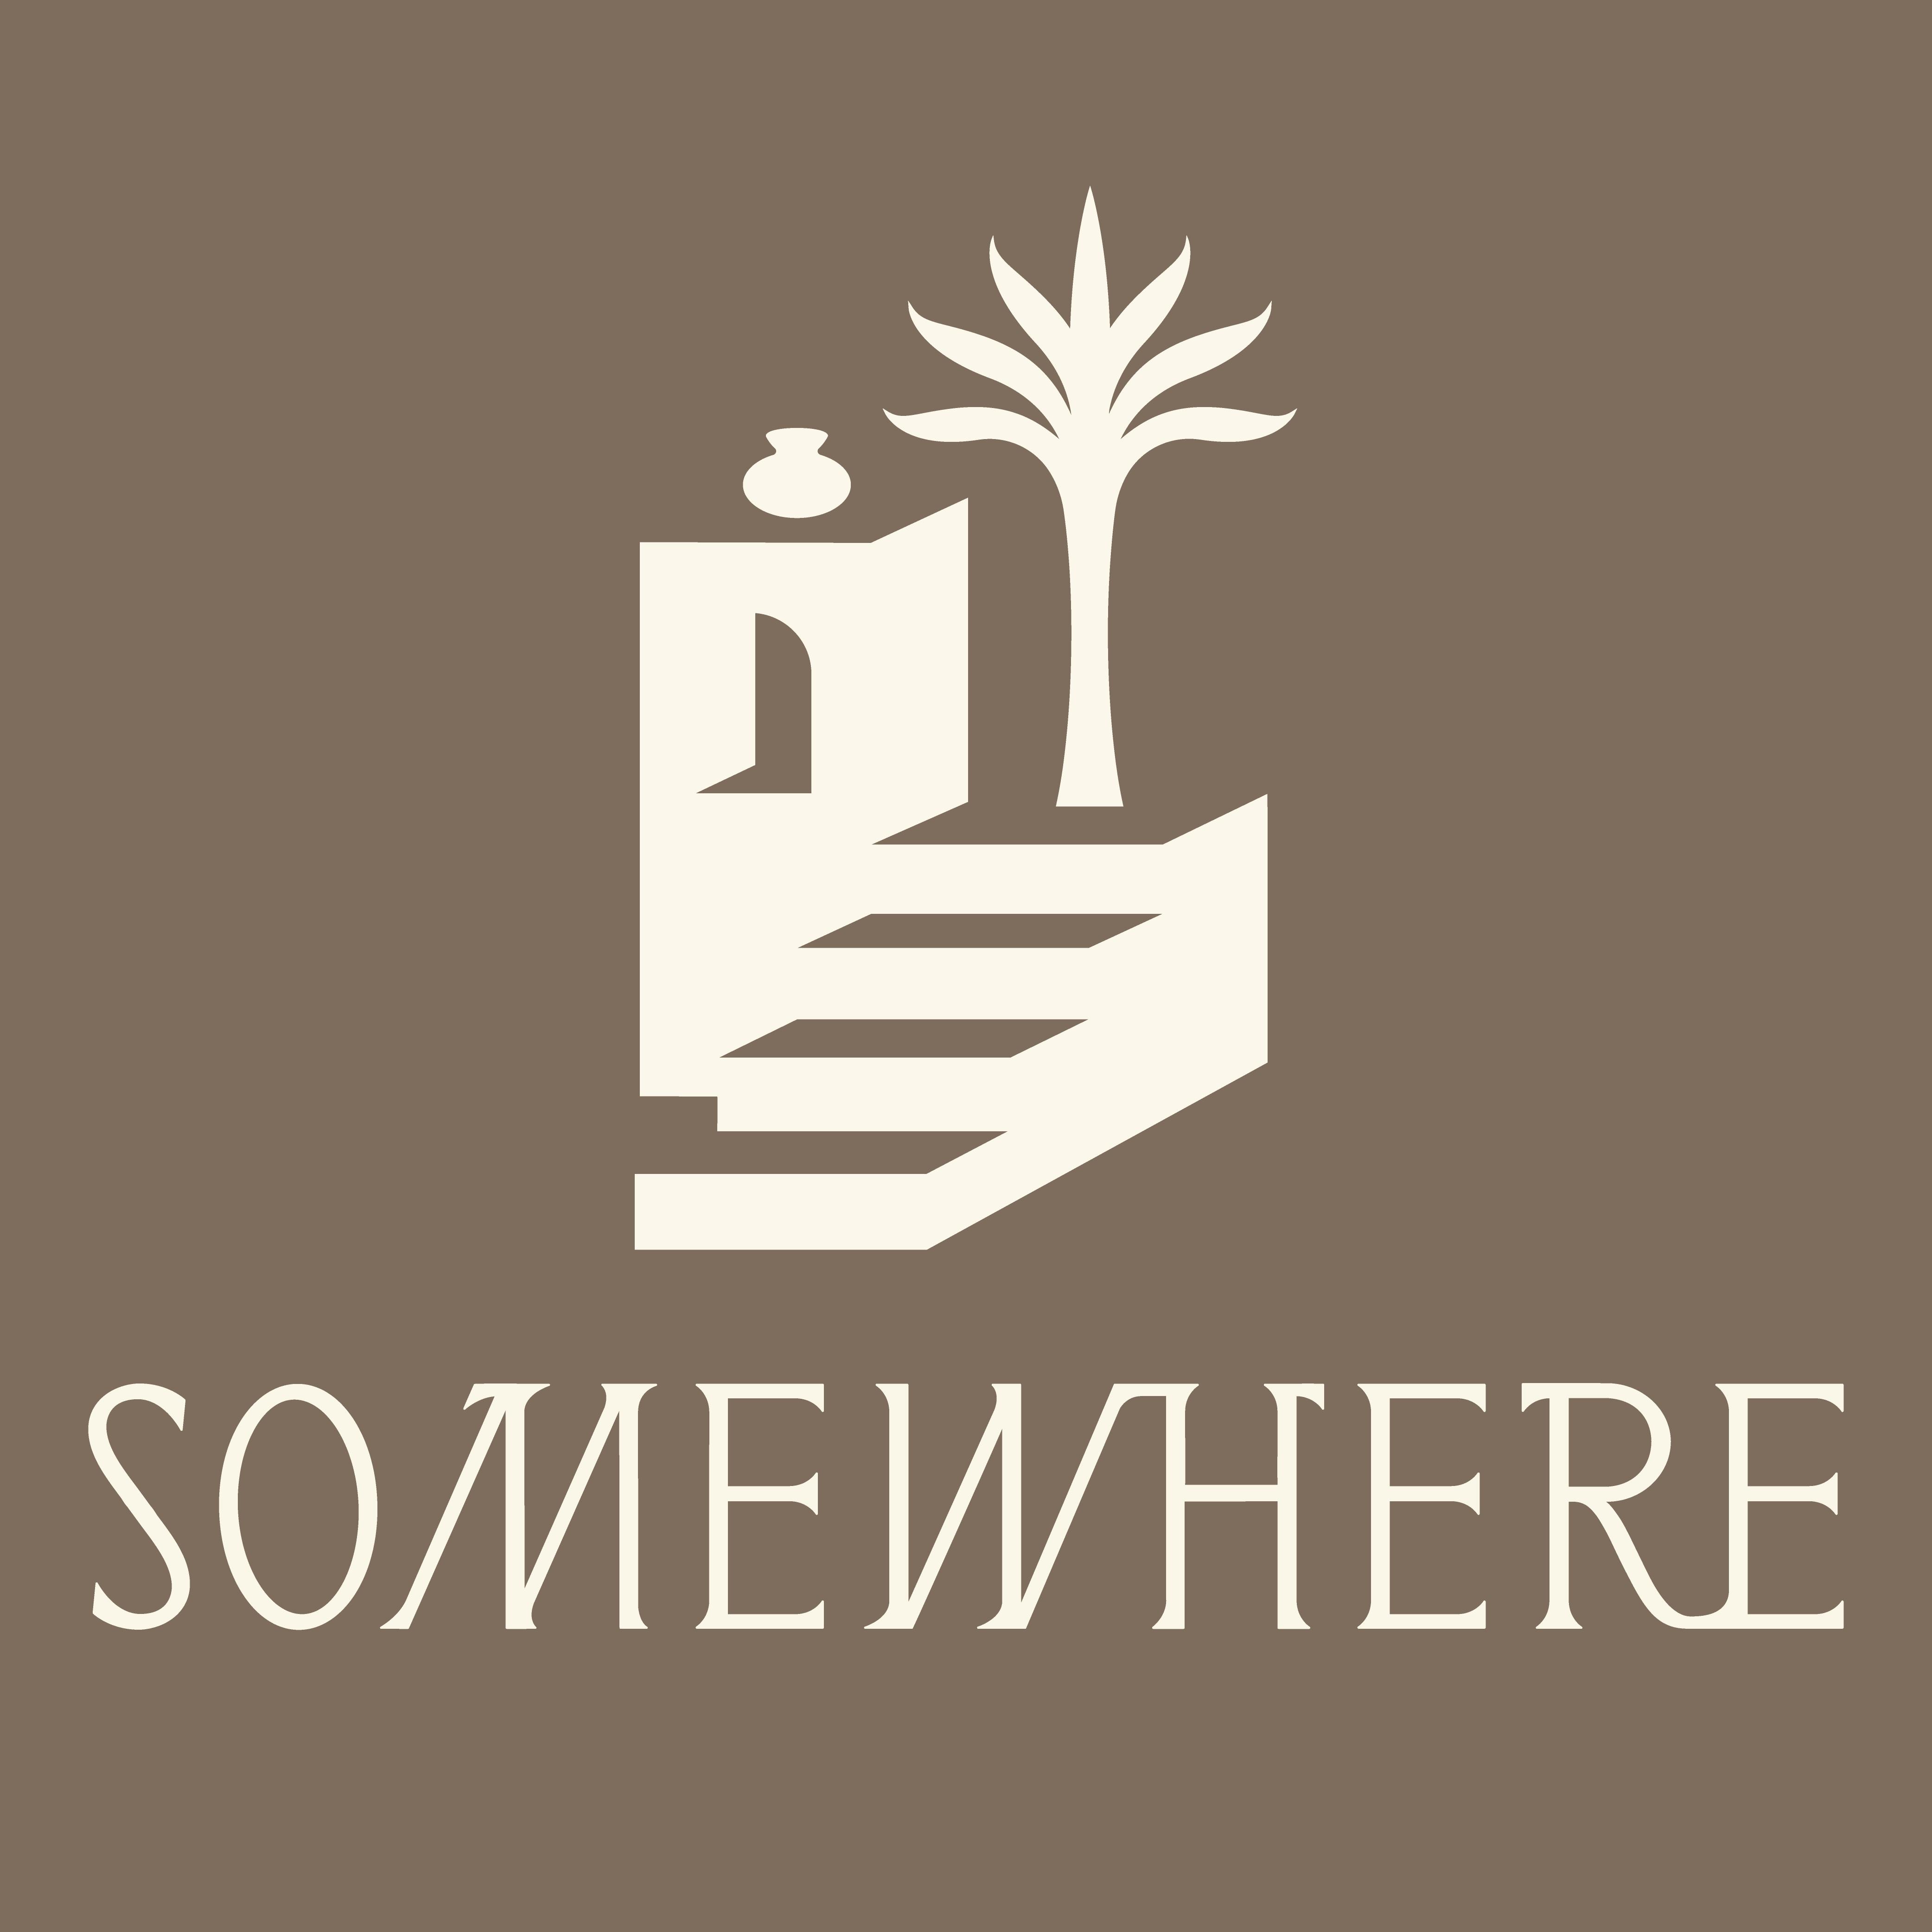 Somewhere-logo